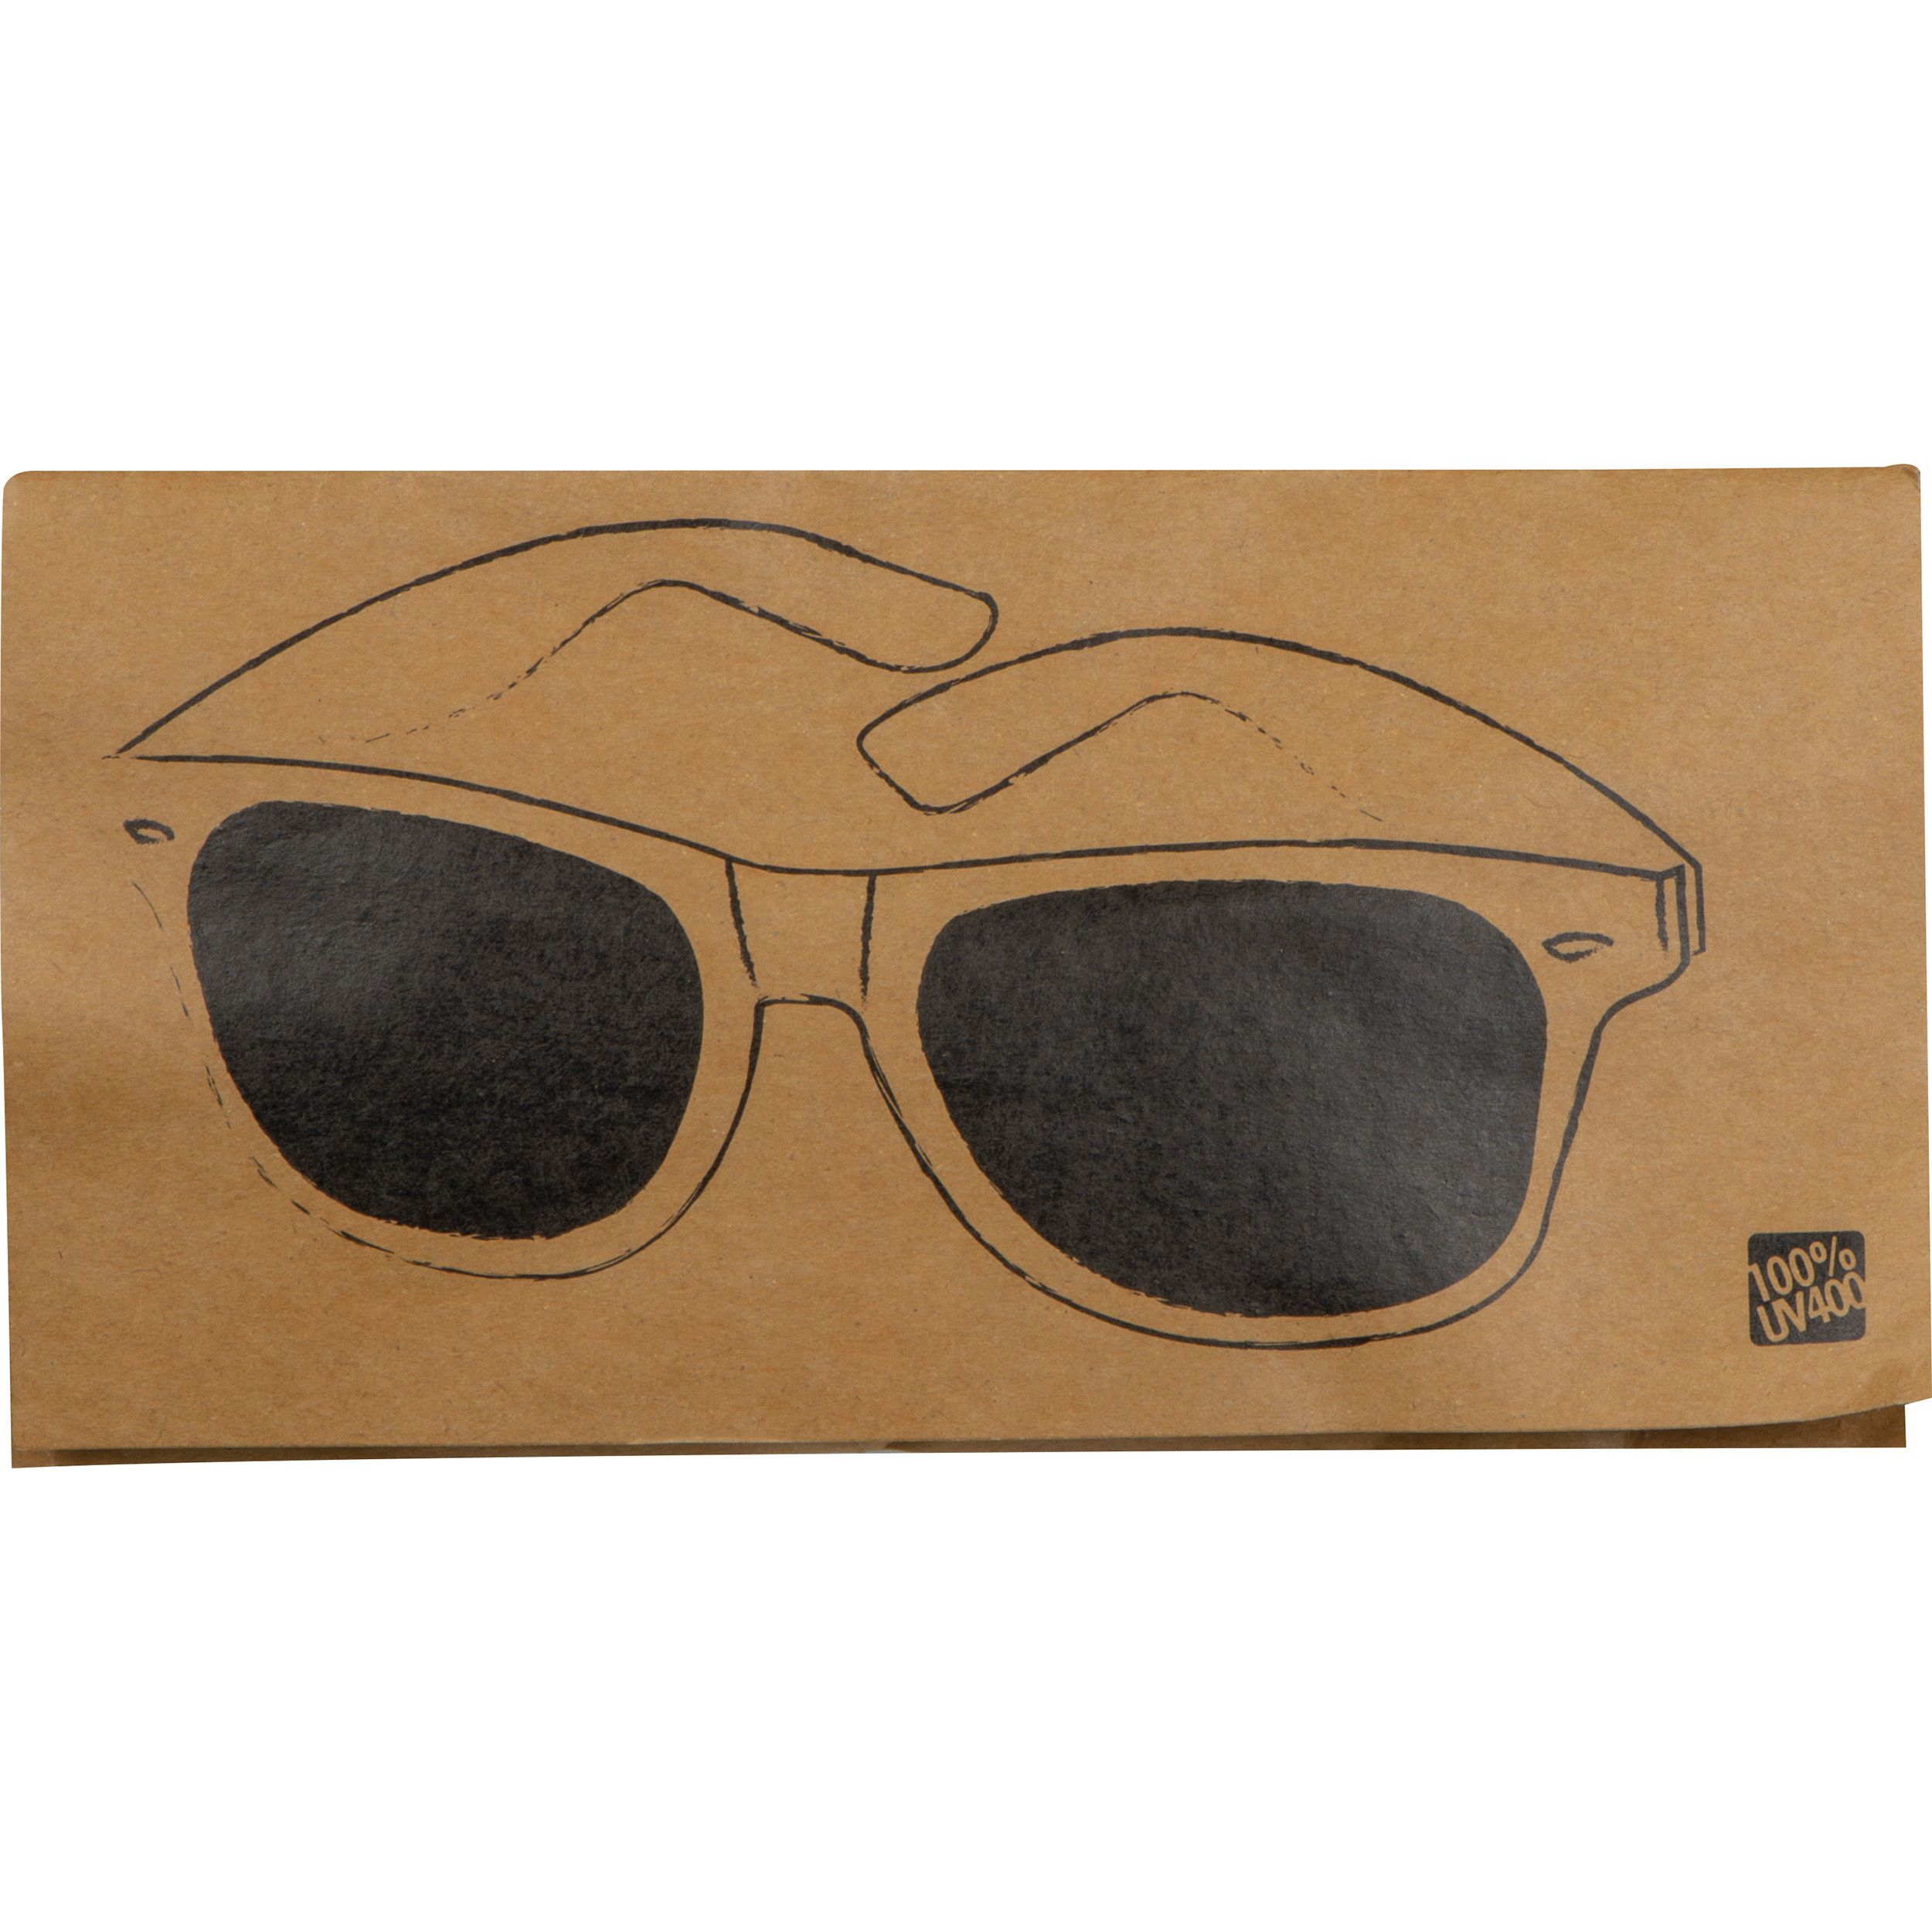 Sonnenbrille aus Kunststoff im "Nerdlook", UV 400 Schutz, weiß